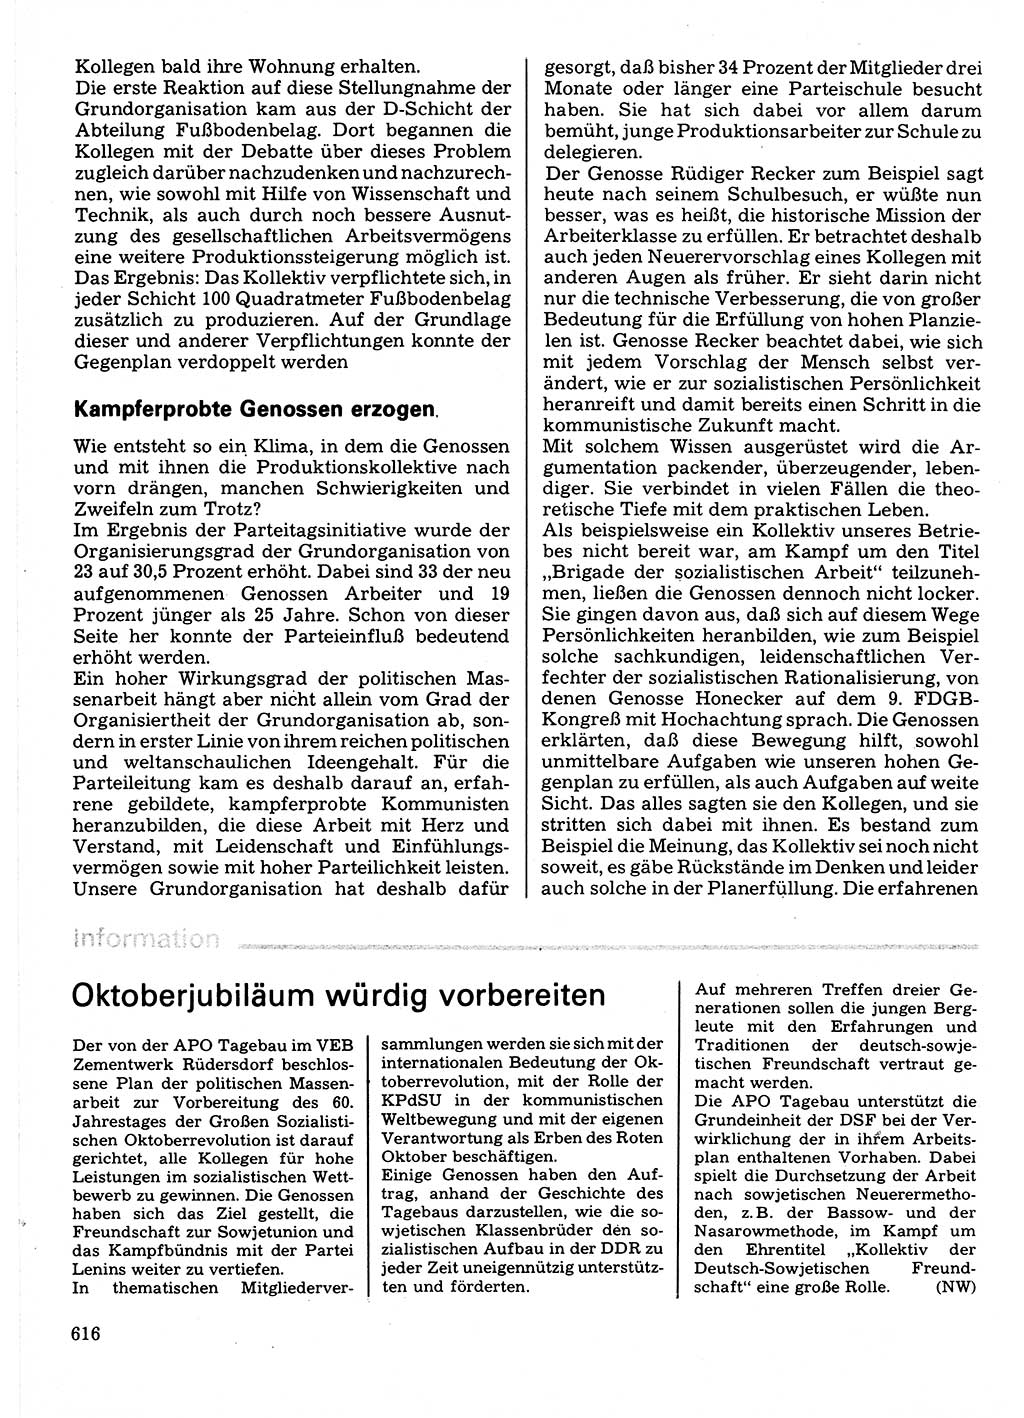 Neuer Weg (NW), Organ des Zentralkomitees (ZK) der SED (Sozialistische Einheitspartei Deutschlands) für Fragen des Parteilebens, 32. Jahrgang [Deutsche Demokratische Republik (DDR)] 1977, Seite 616 (NW ZK SED DDR 1977, S. 616)